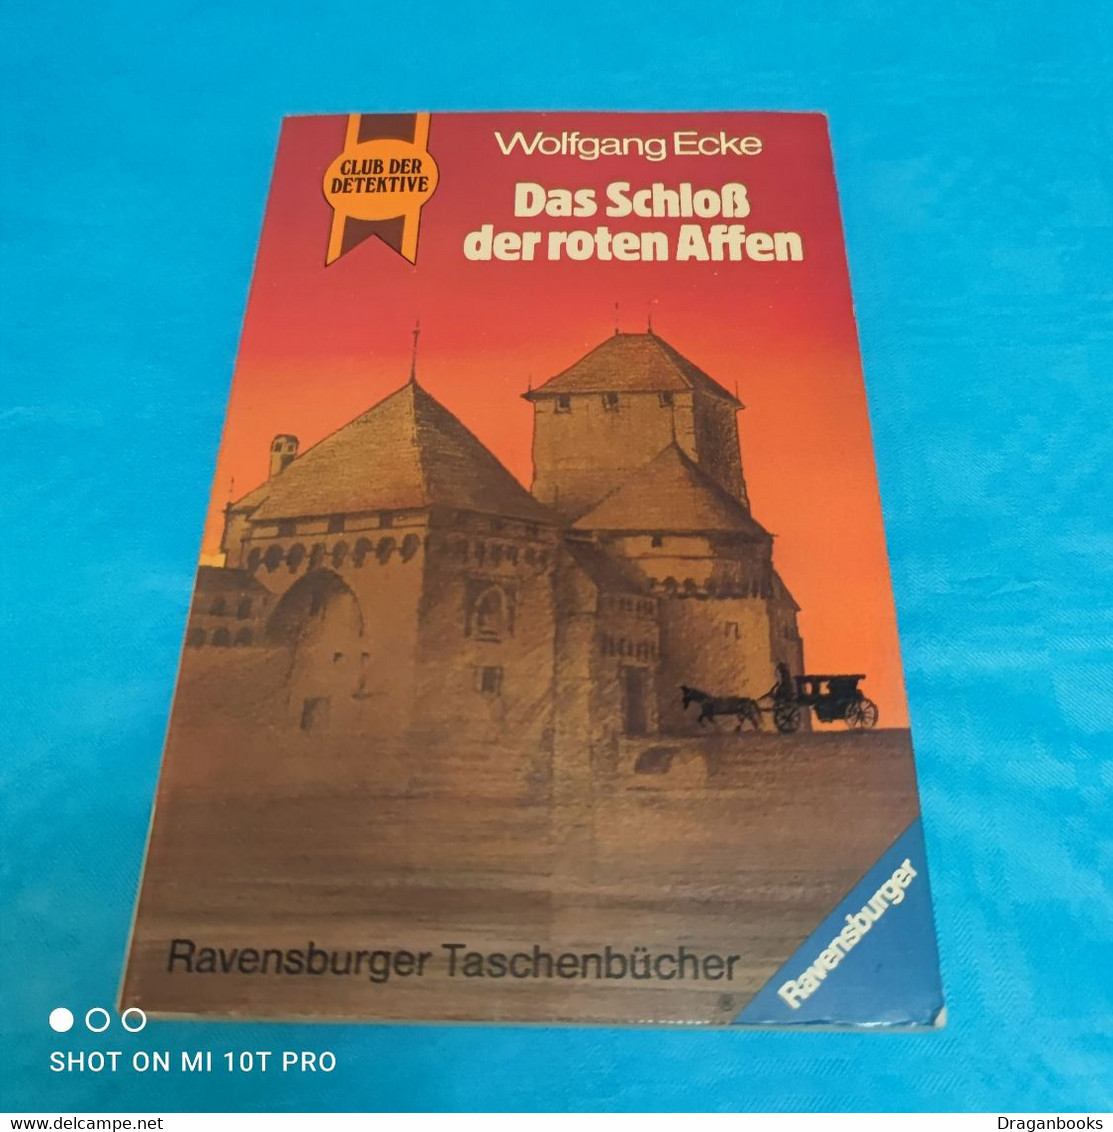 Wolfgang Ecke - Club Der Detektive - Das Schloss Der Roten Affen - Adventure